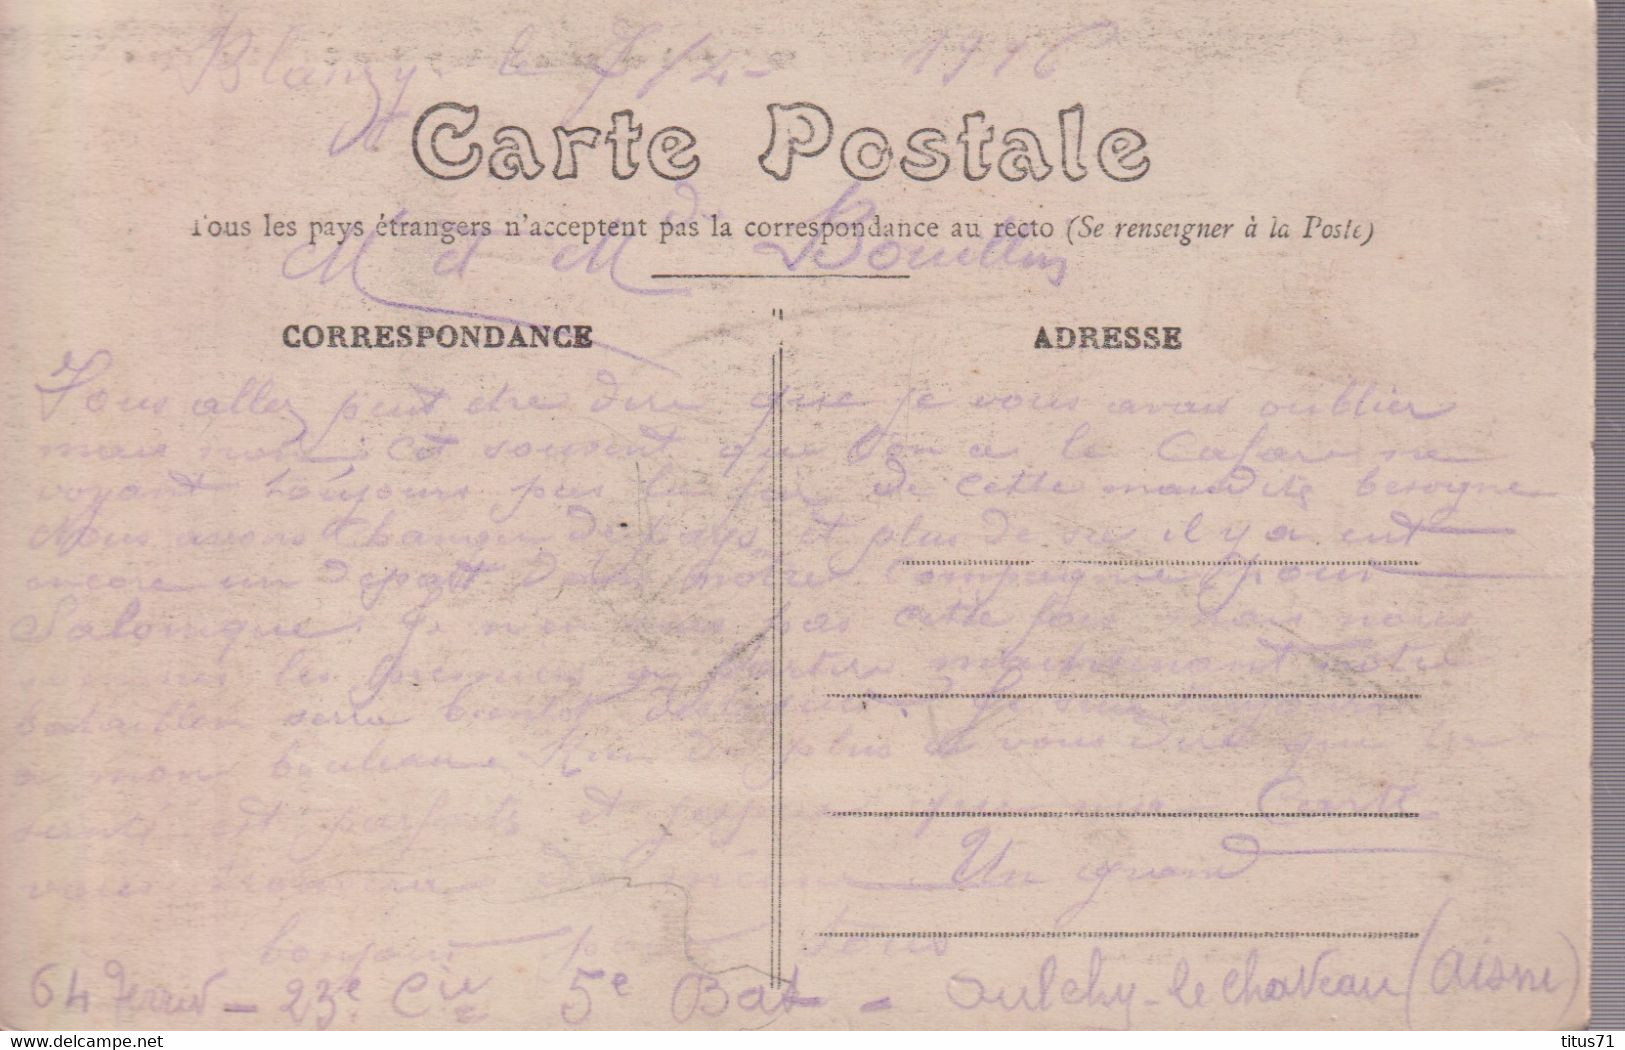 CPA Carrière Sous Poissy ( 78 ) - Les Ecluses - Circulée 1916 - Carrieres Sous Poissy